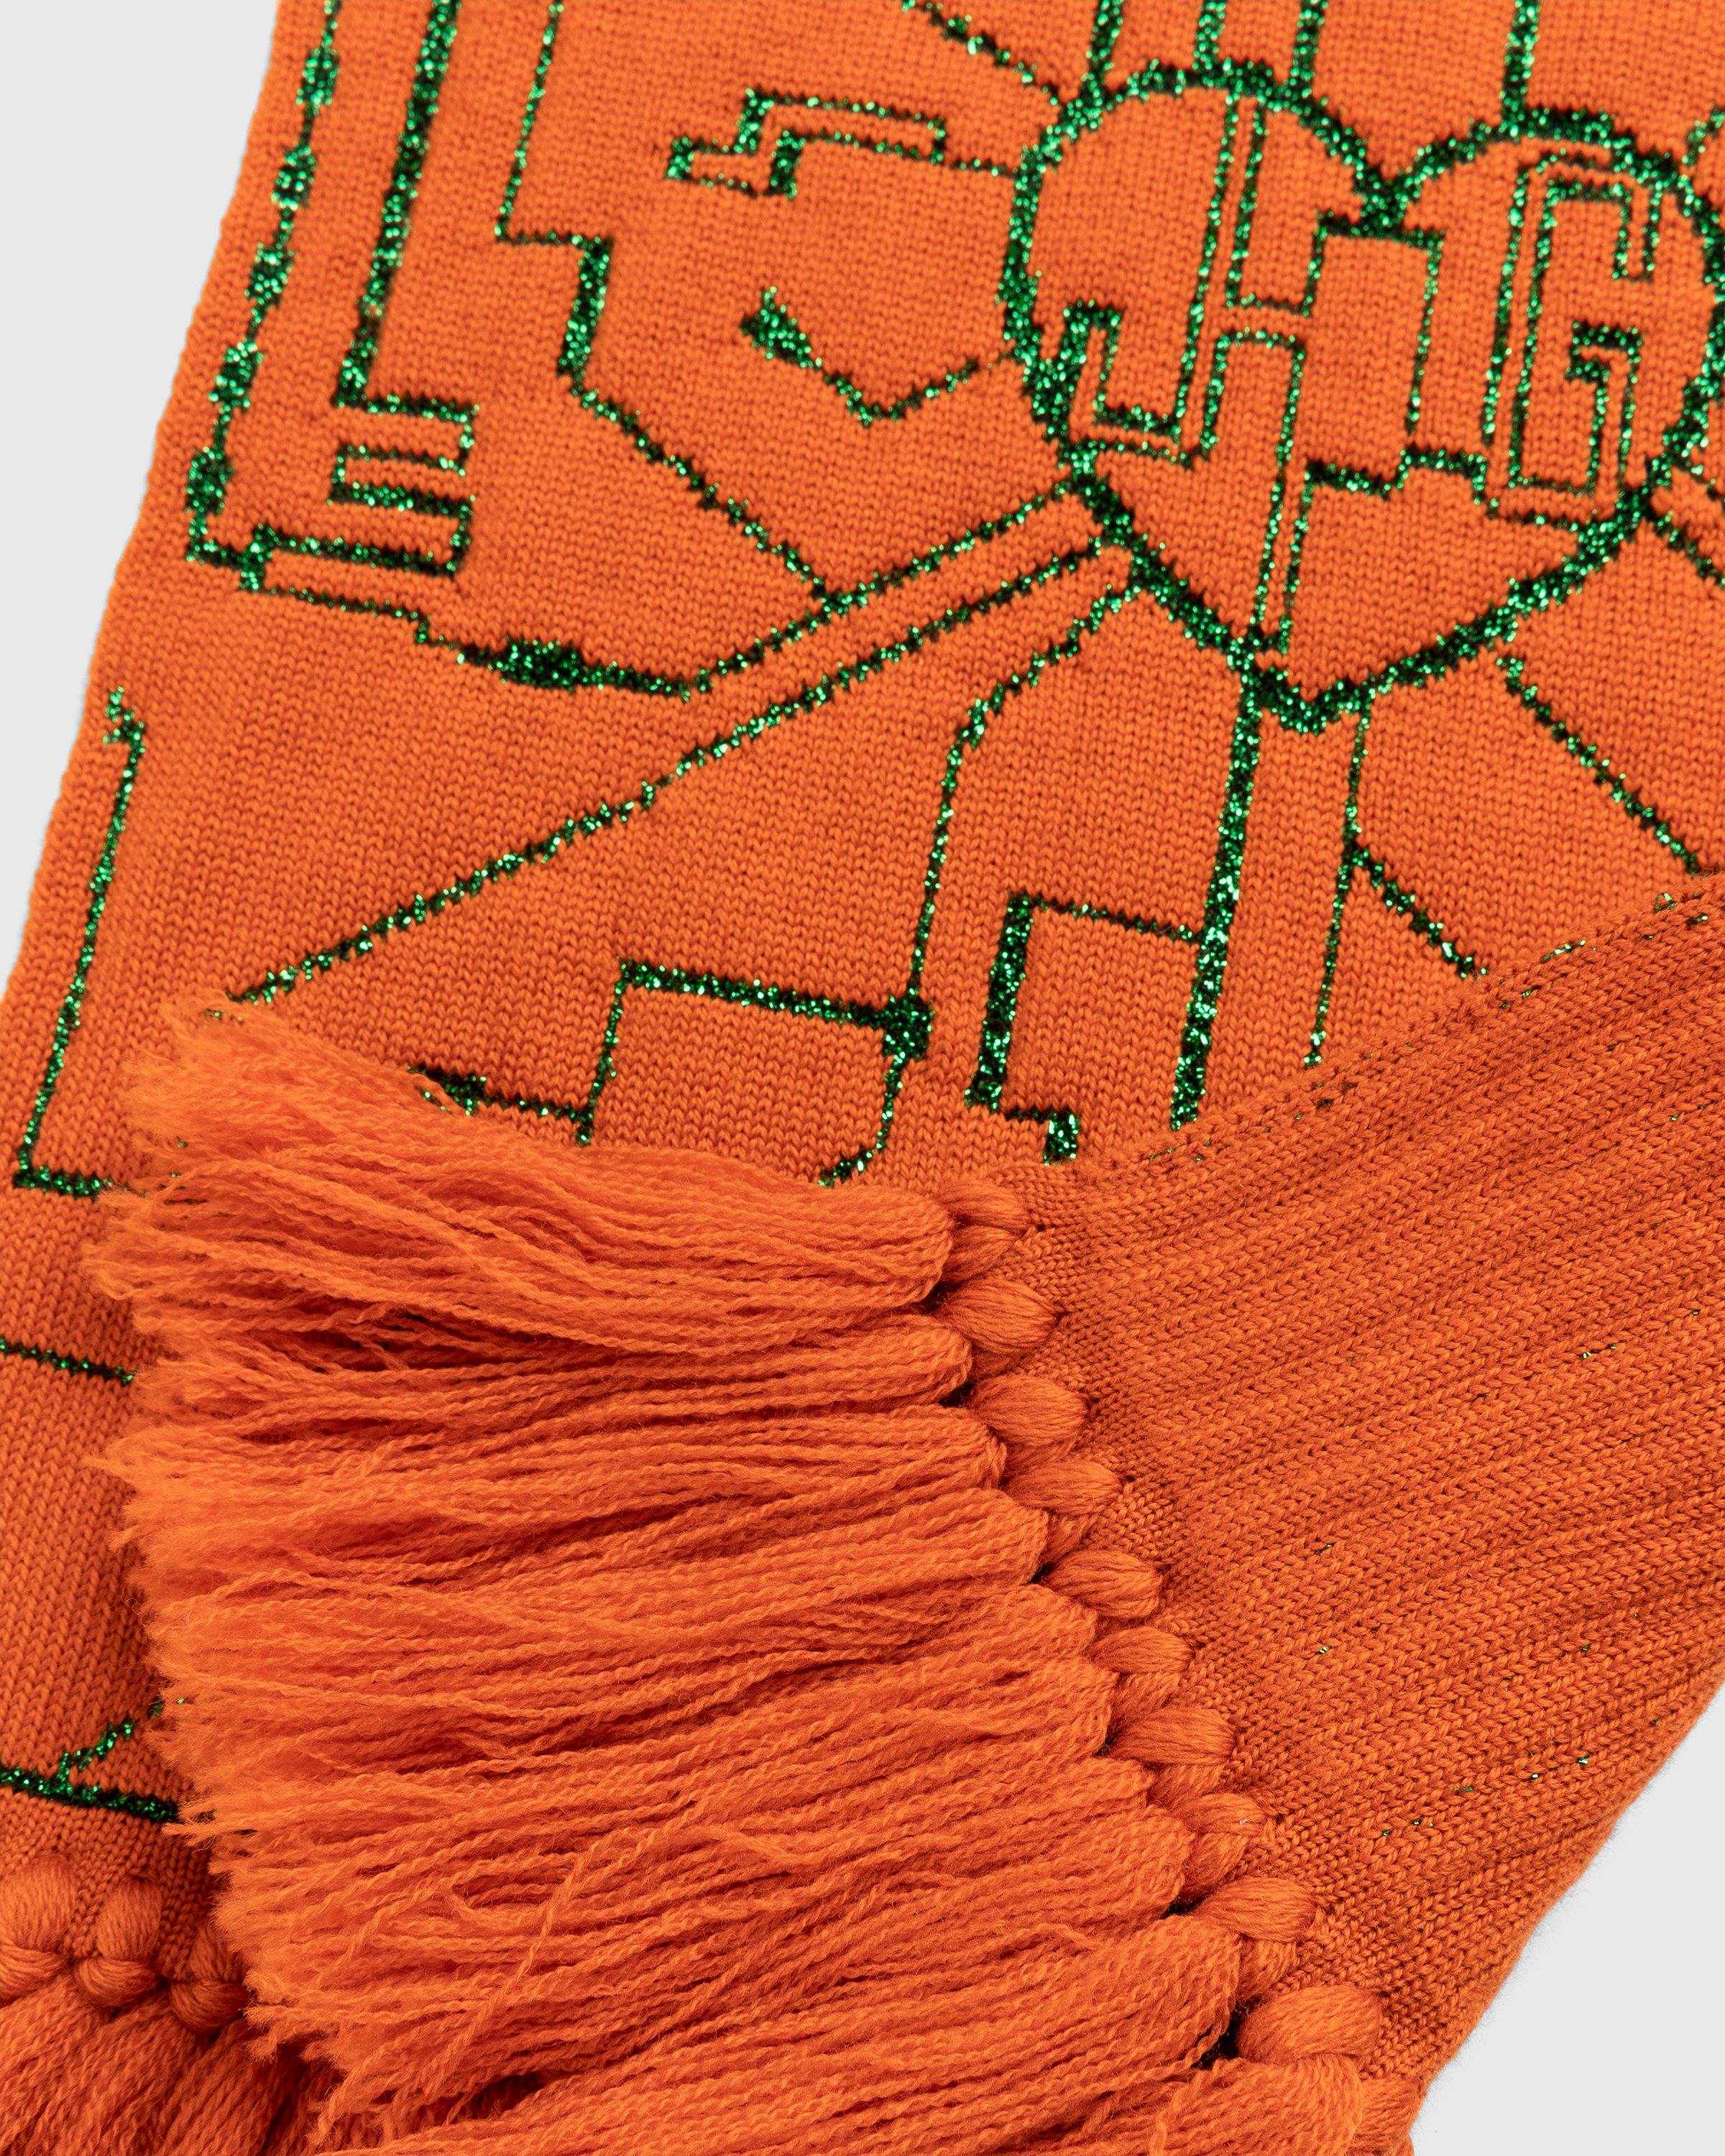 Jean Paul Gaultier - Scarf - Accessories - Orange - Image 7